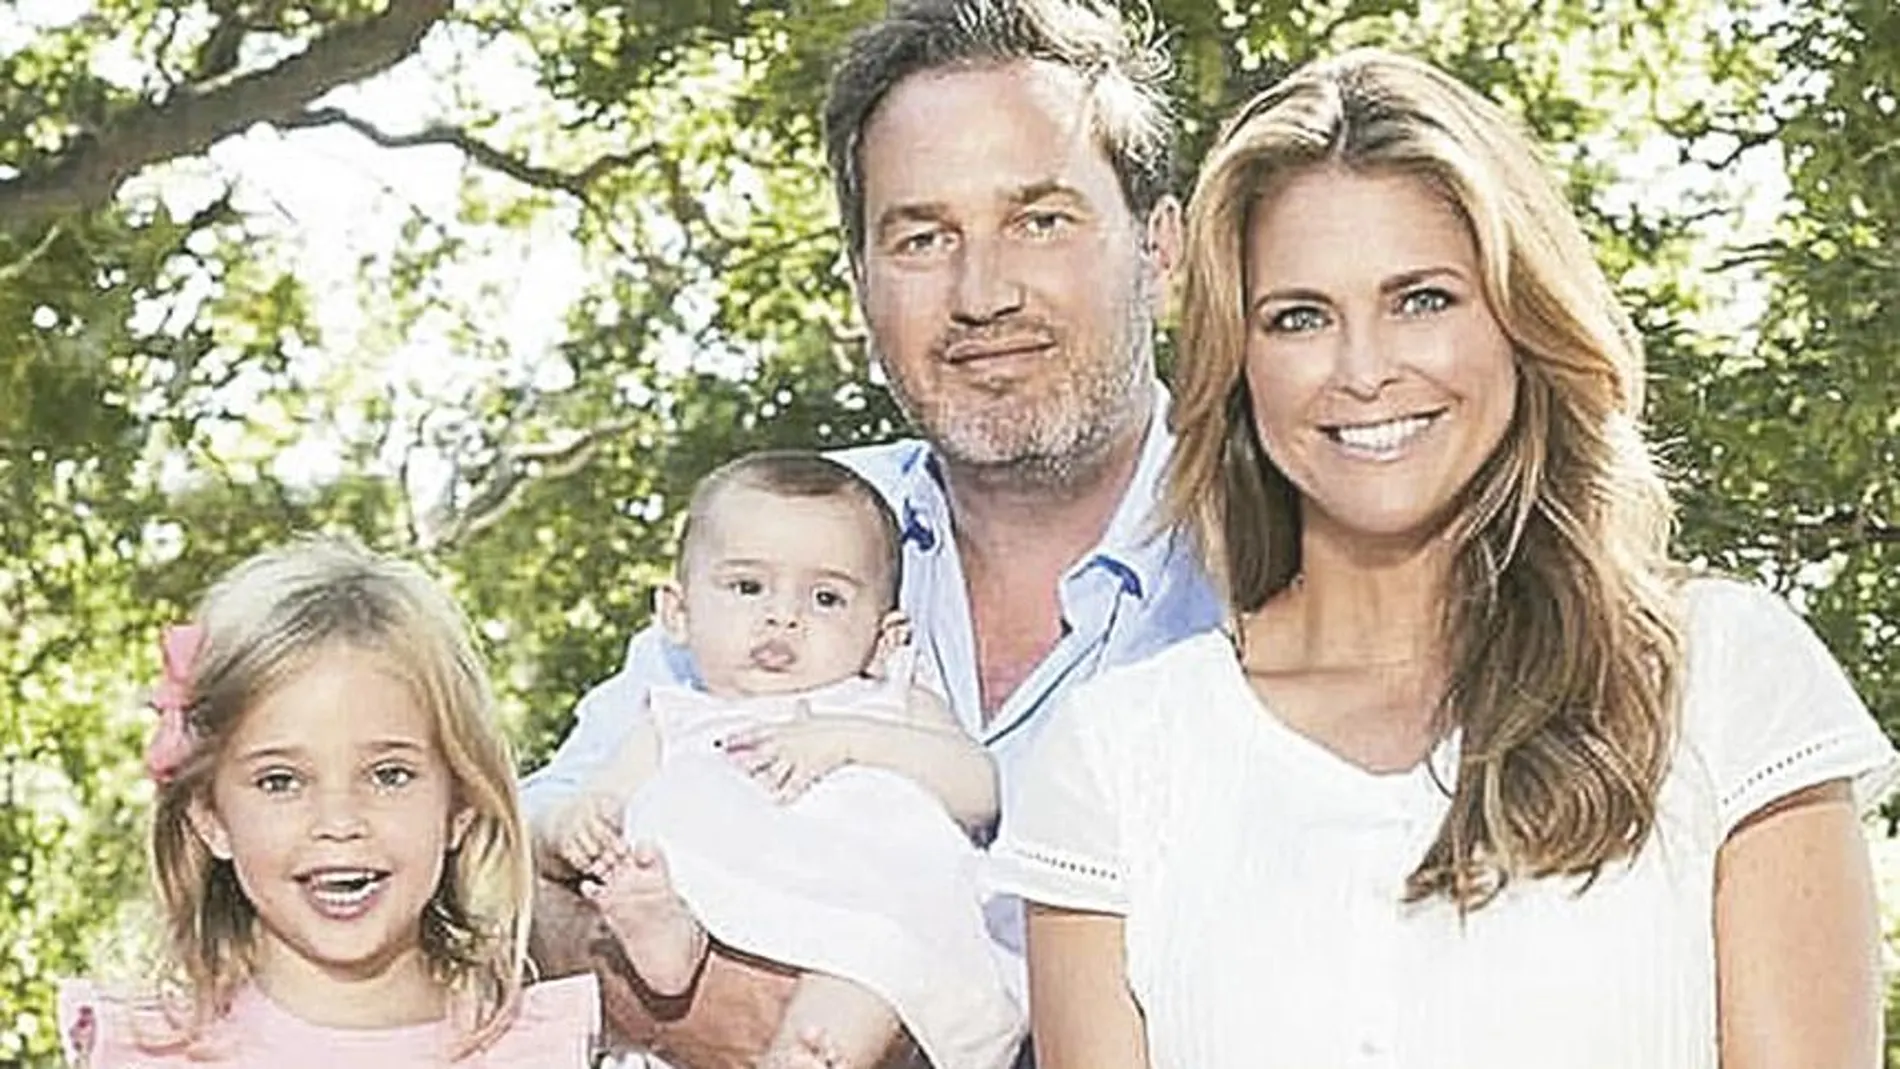 La princesa y Chris O'Neill tienen tres hijos: Leonor (4), Nicolás (3) y la bebé Adriana